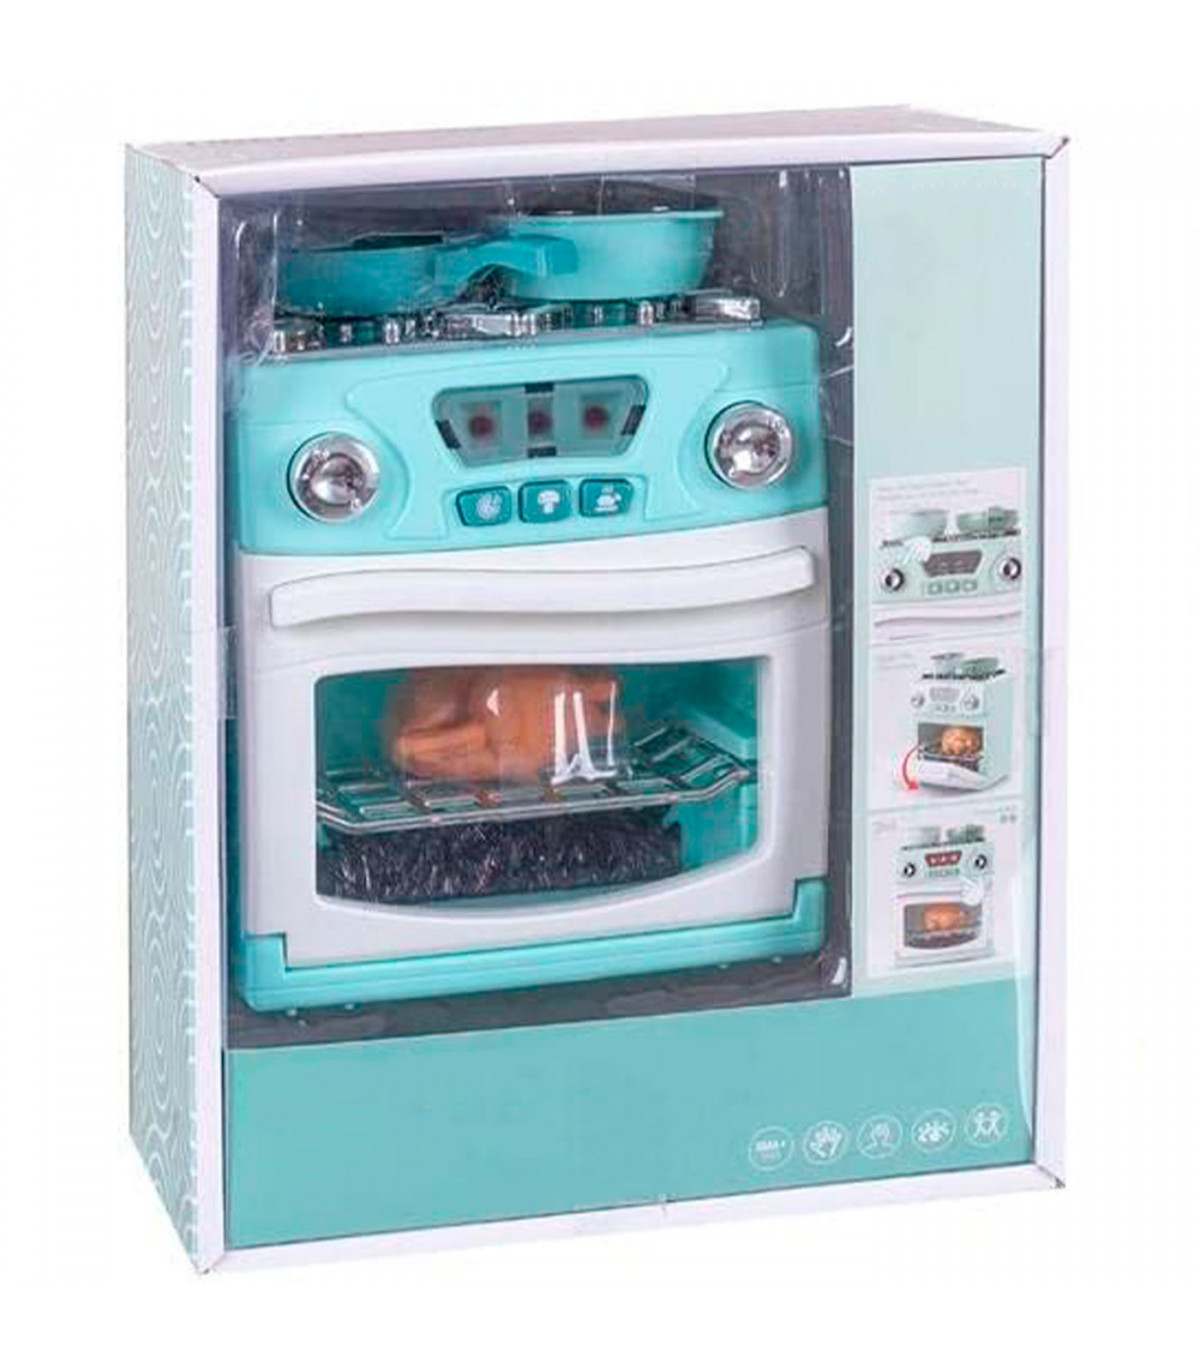 Tradineur - Lavadora de juguete con luz y sonido, mini electrodoméstico  interactivo, simulación, funciona con pilas, 17,5 x 13,5